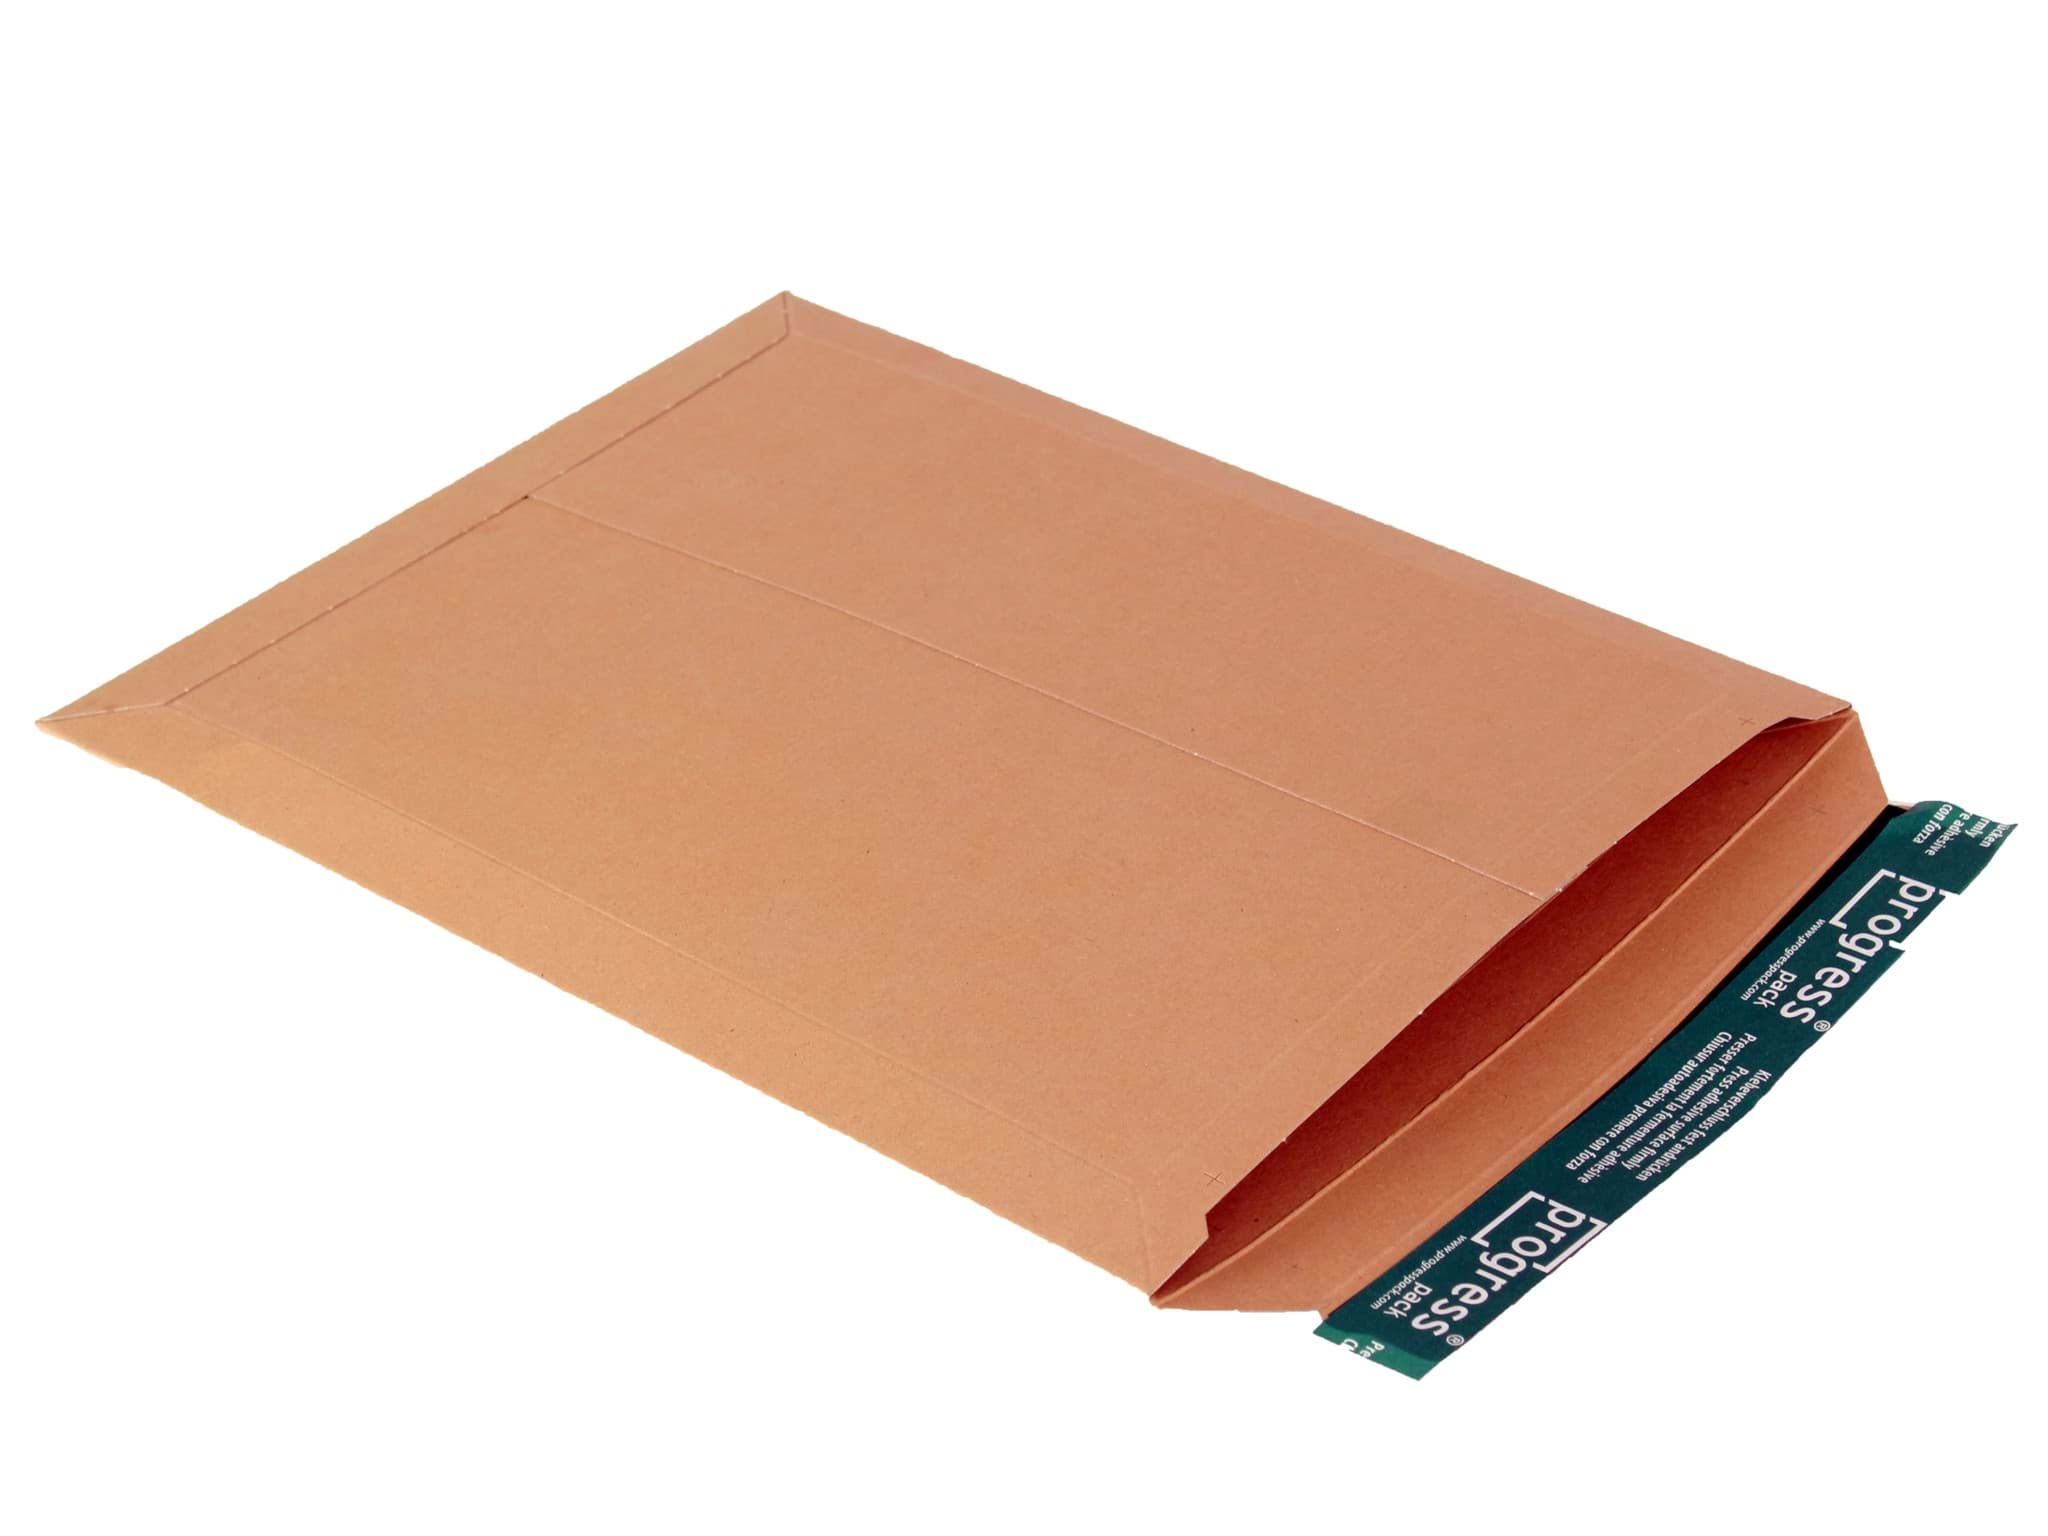 Документ без упаковки можно. Картонный конверт. Картонные конверты для документов. Упаковка конверт картон. Картонный конверт а3.